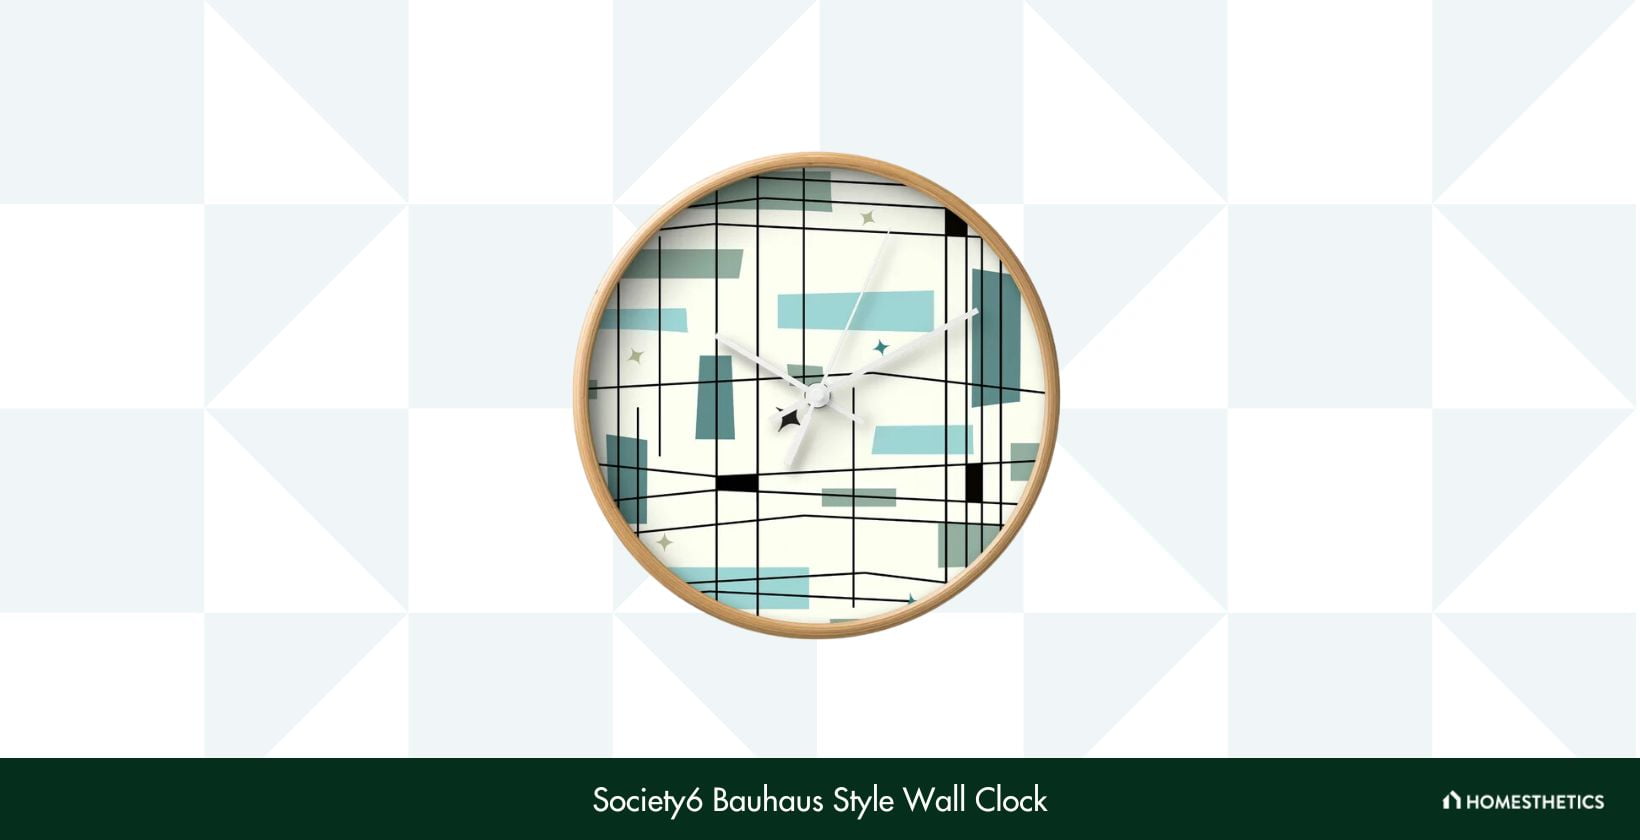 Society6 Bauhaus Style Wall Clock